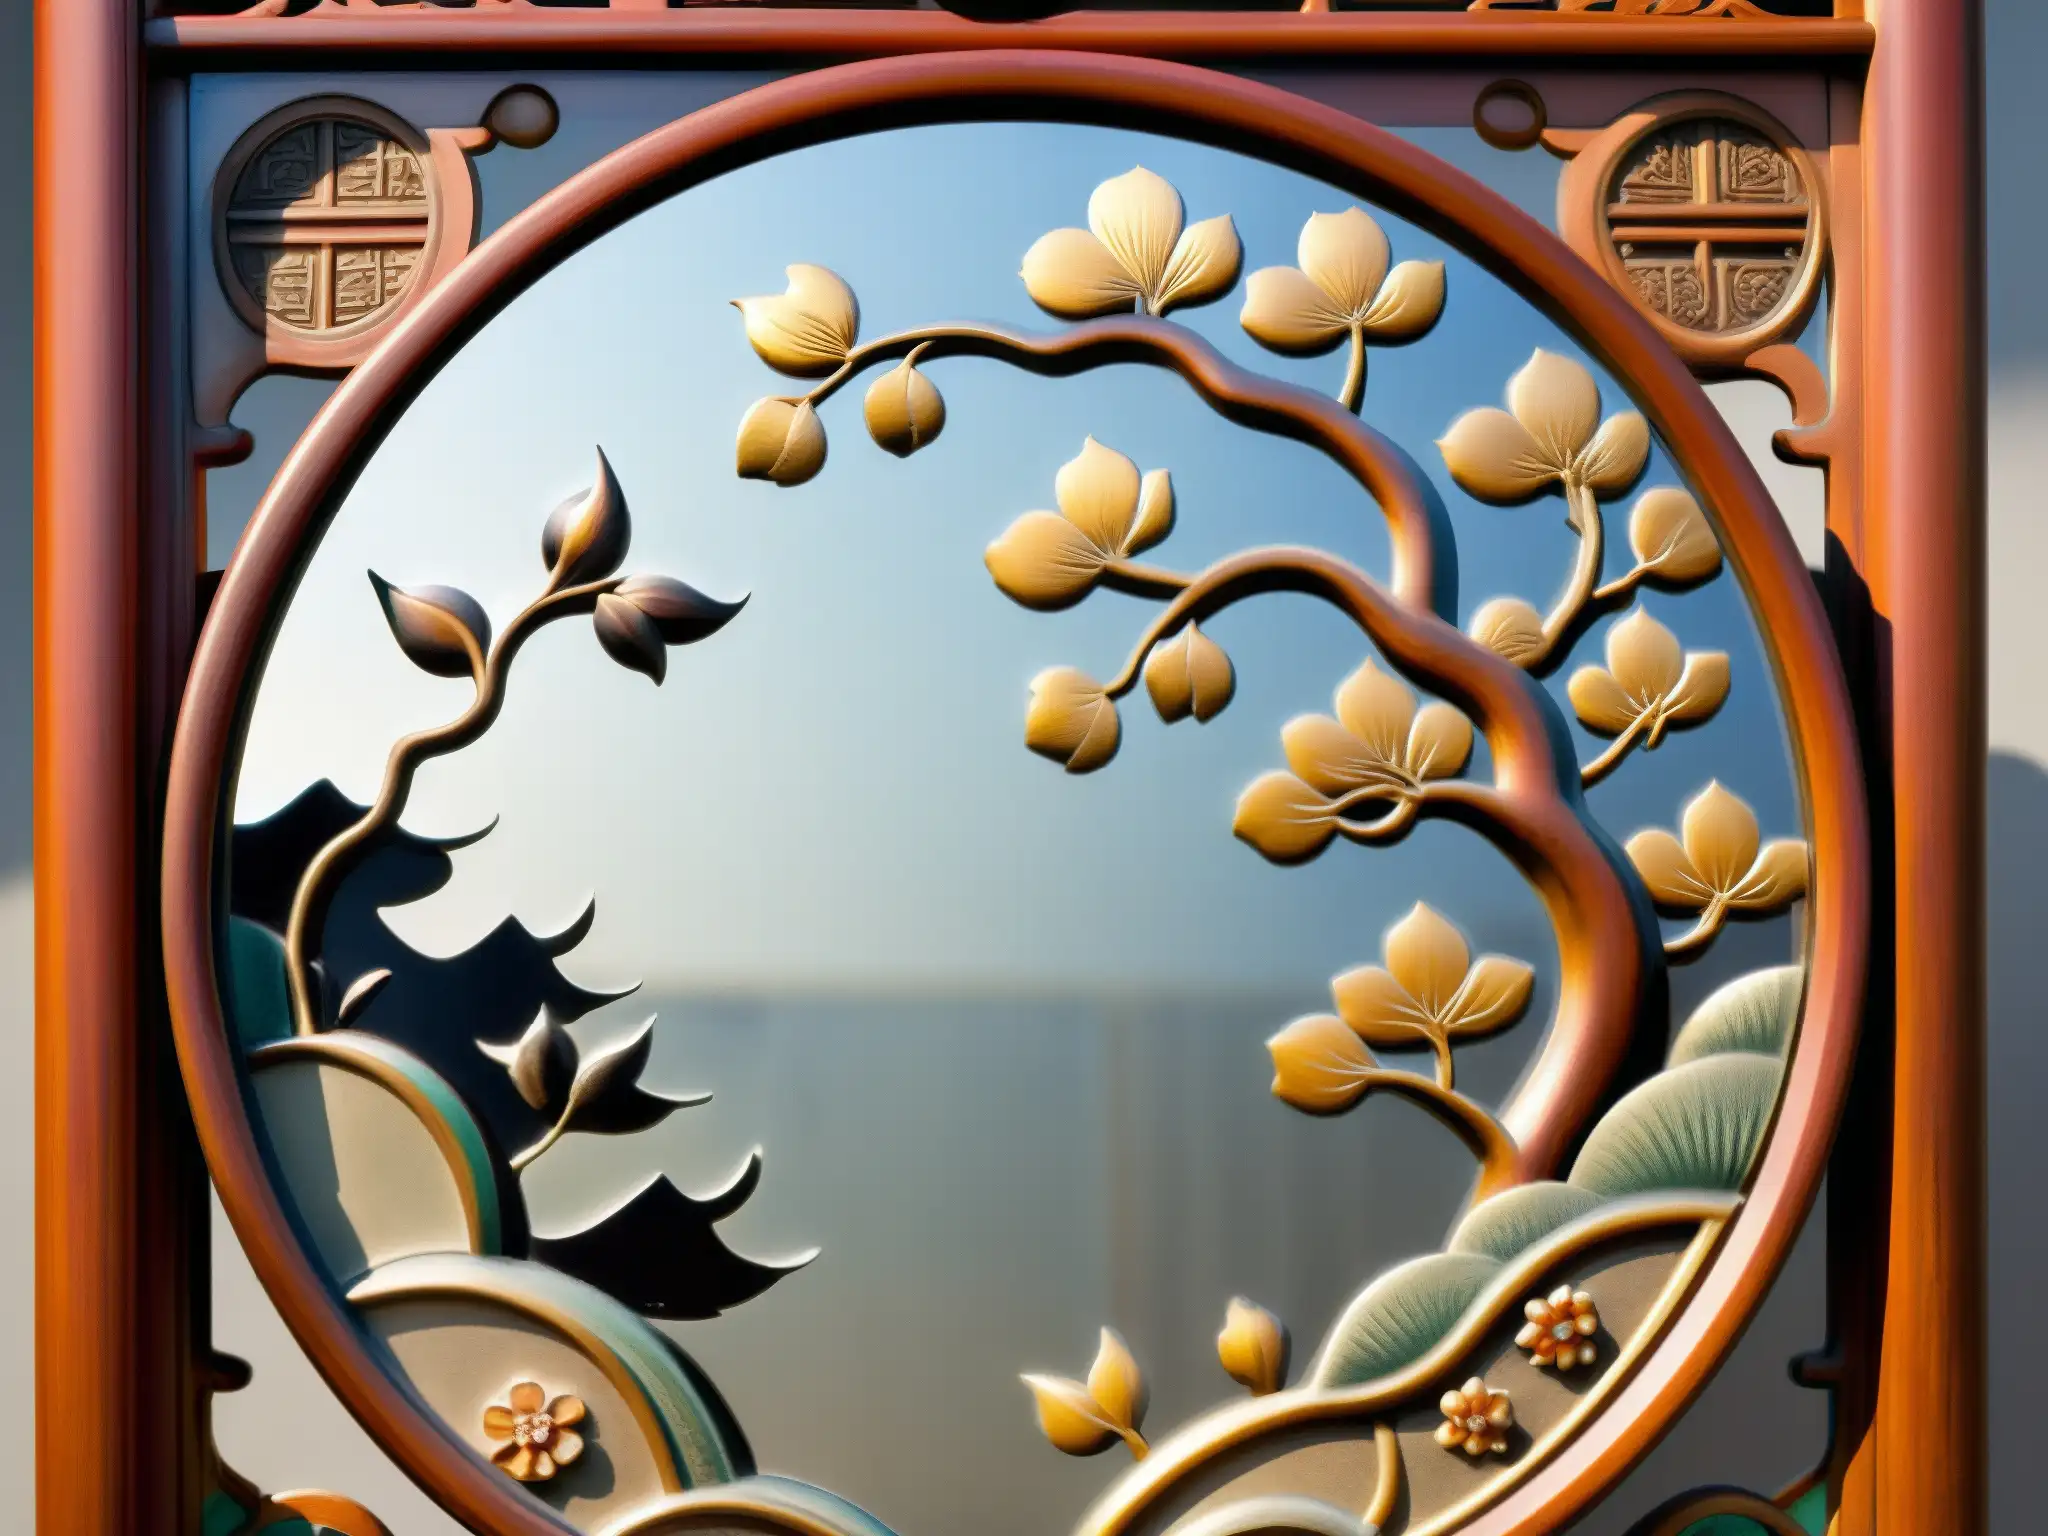 Un espejo japonés antiguo con detalles intrincados de dragones, flores de cerezo y patrones geométricos